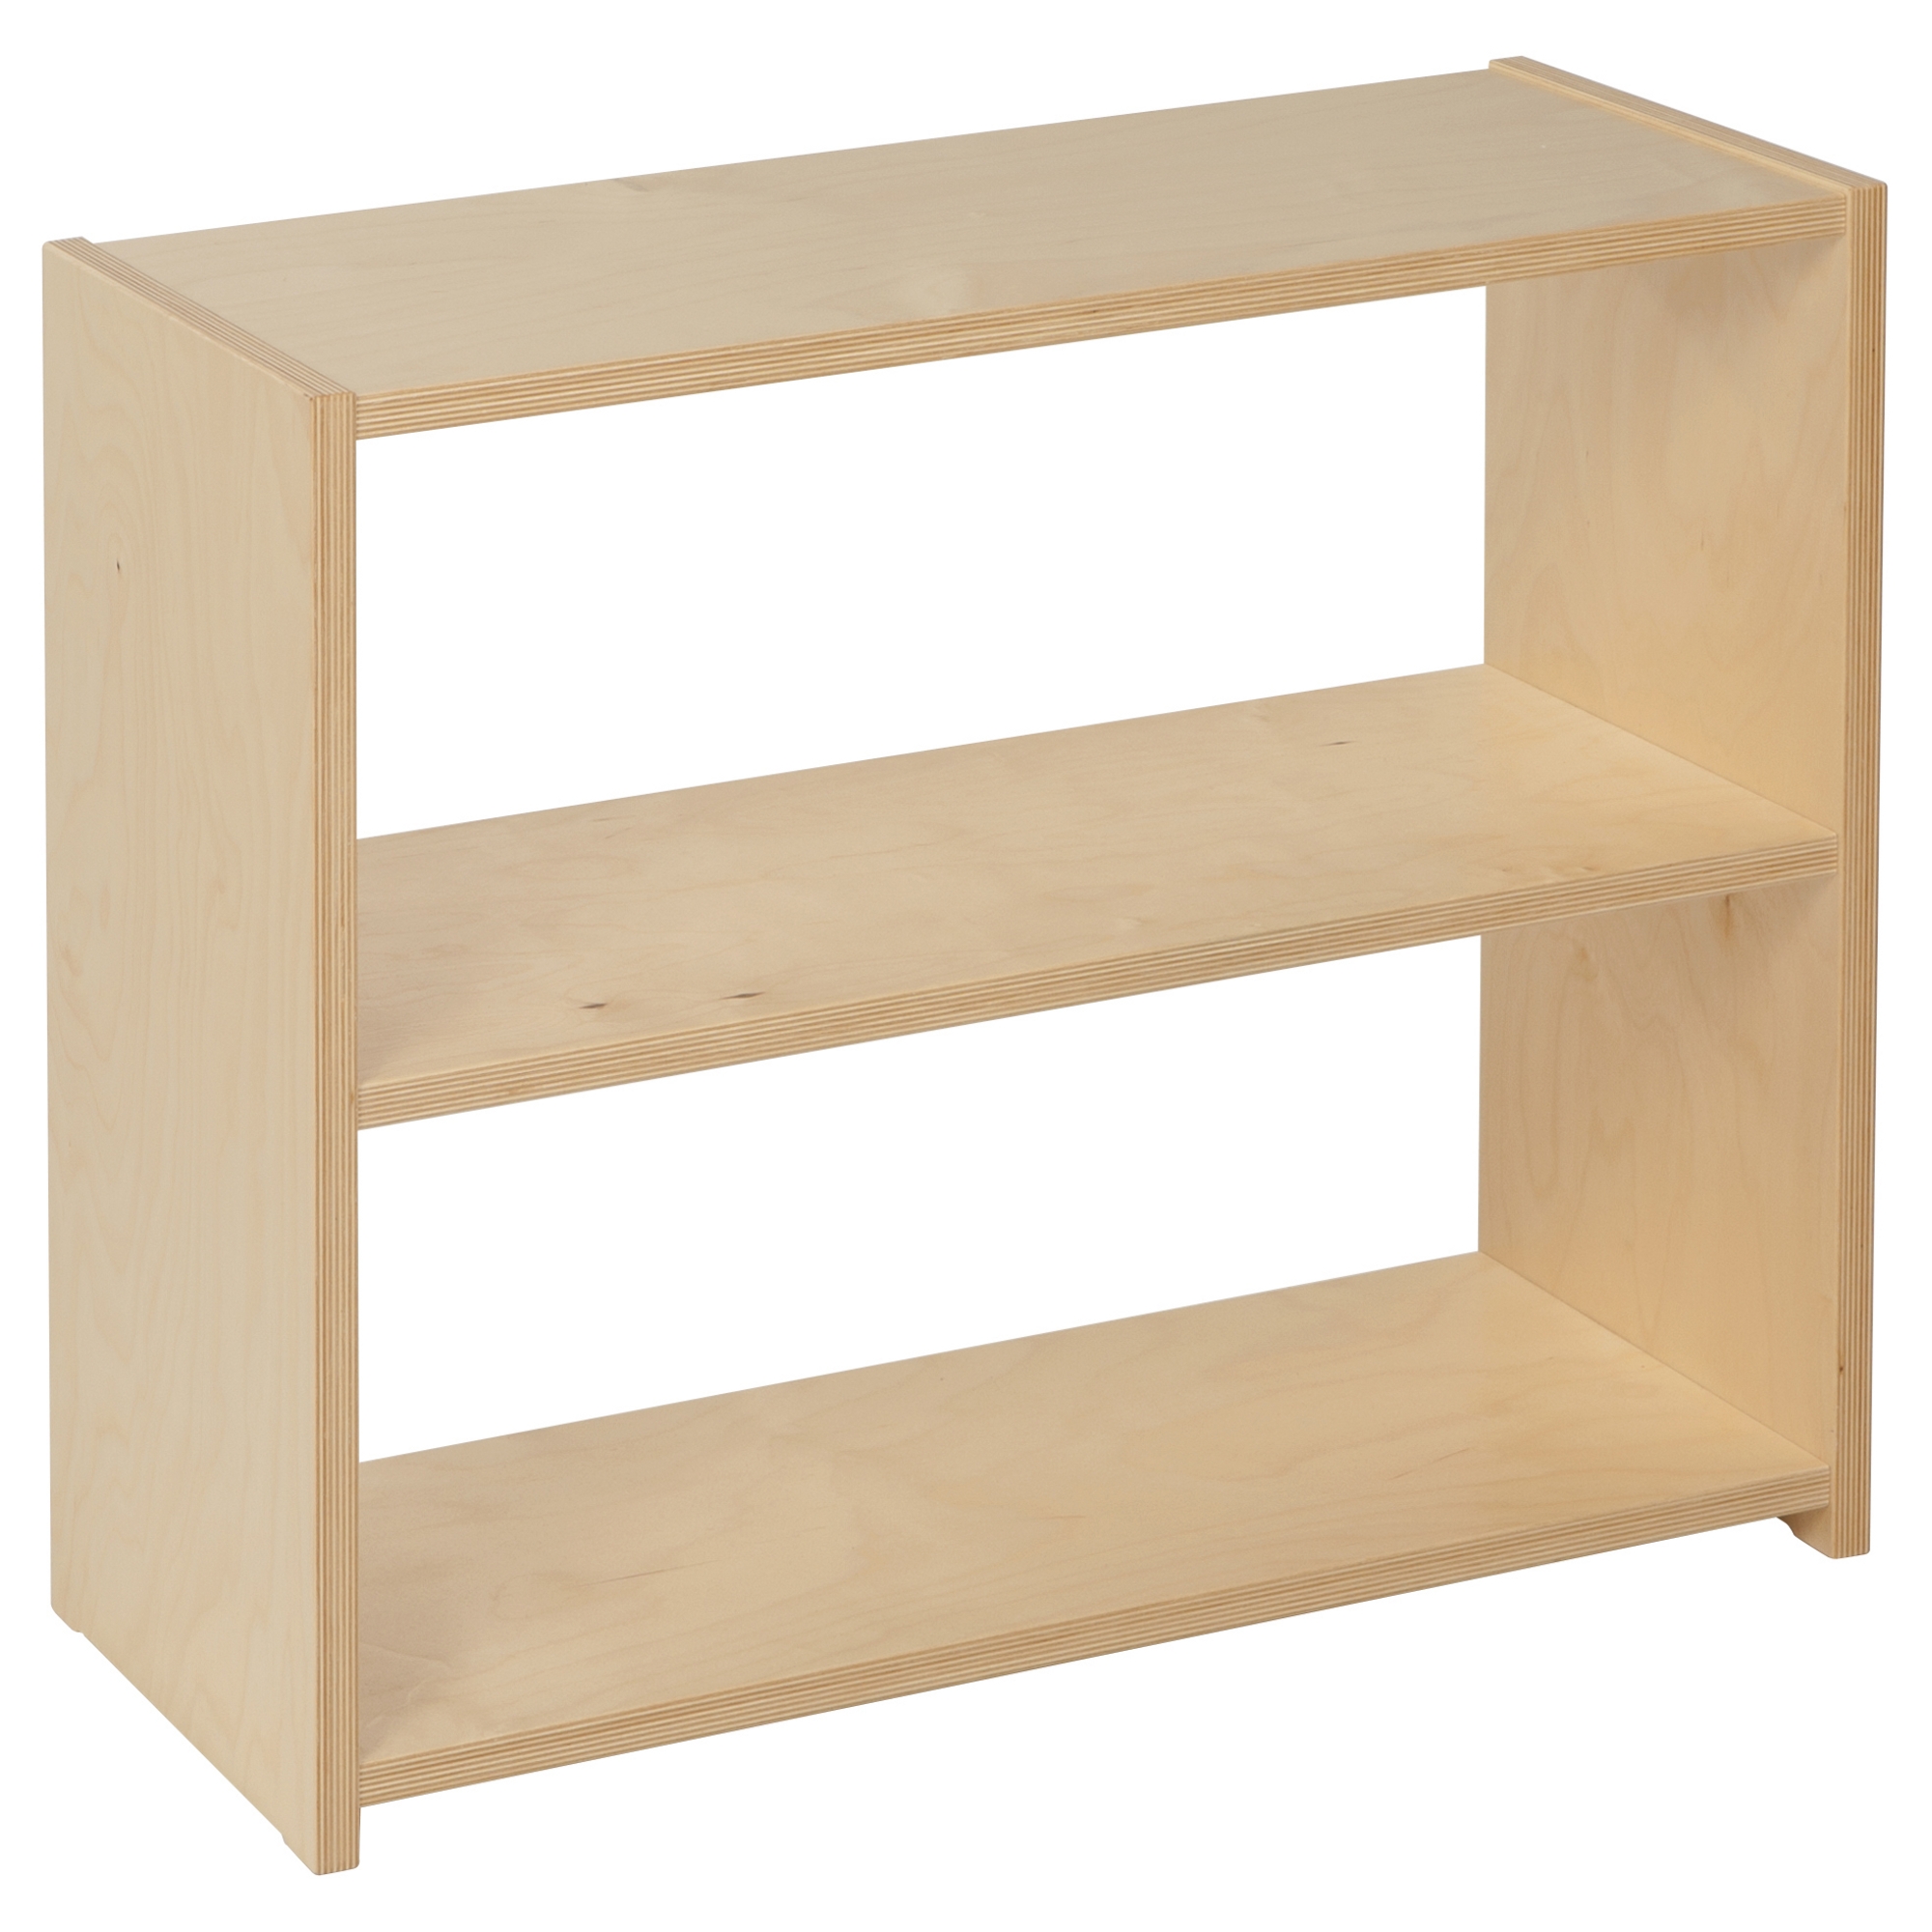 Infant / Toddler Shelf: 2-tier